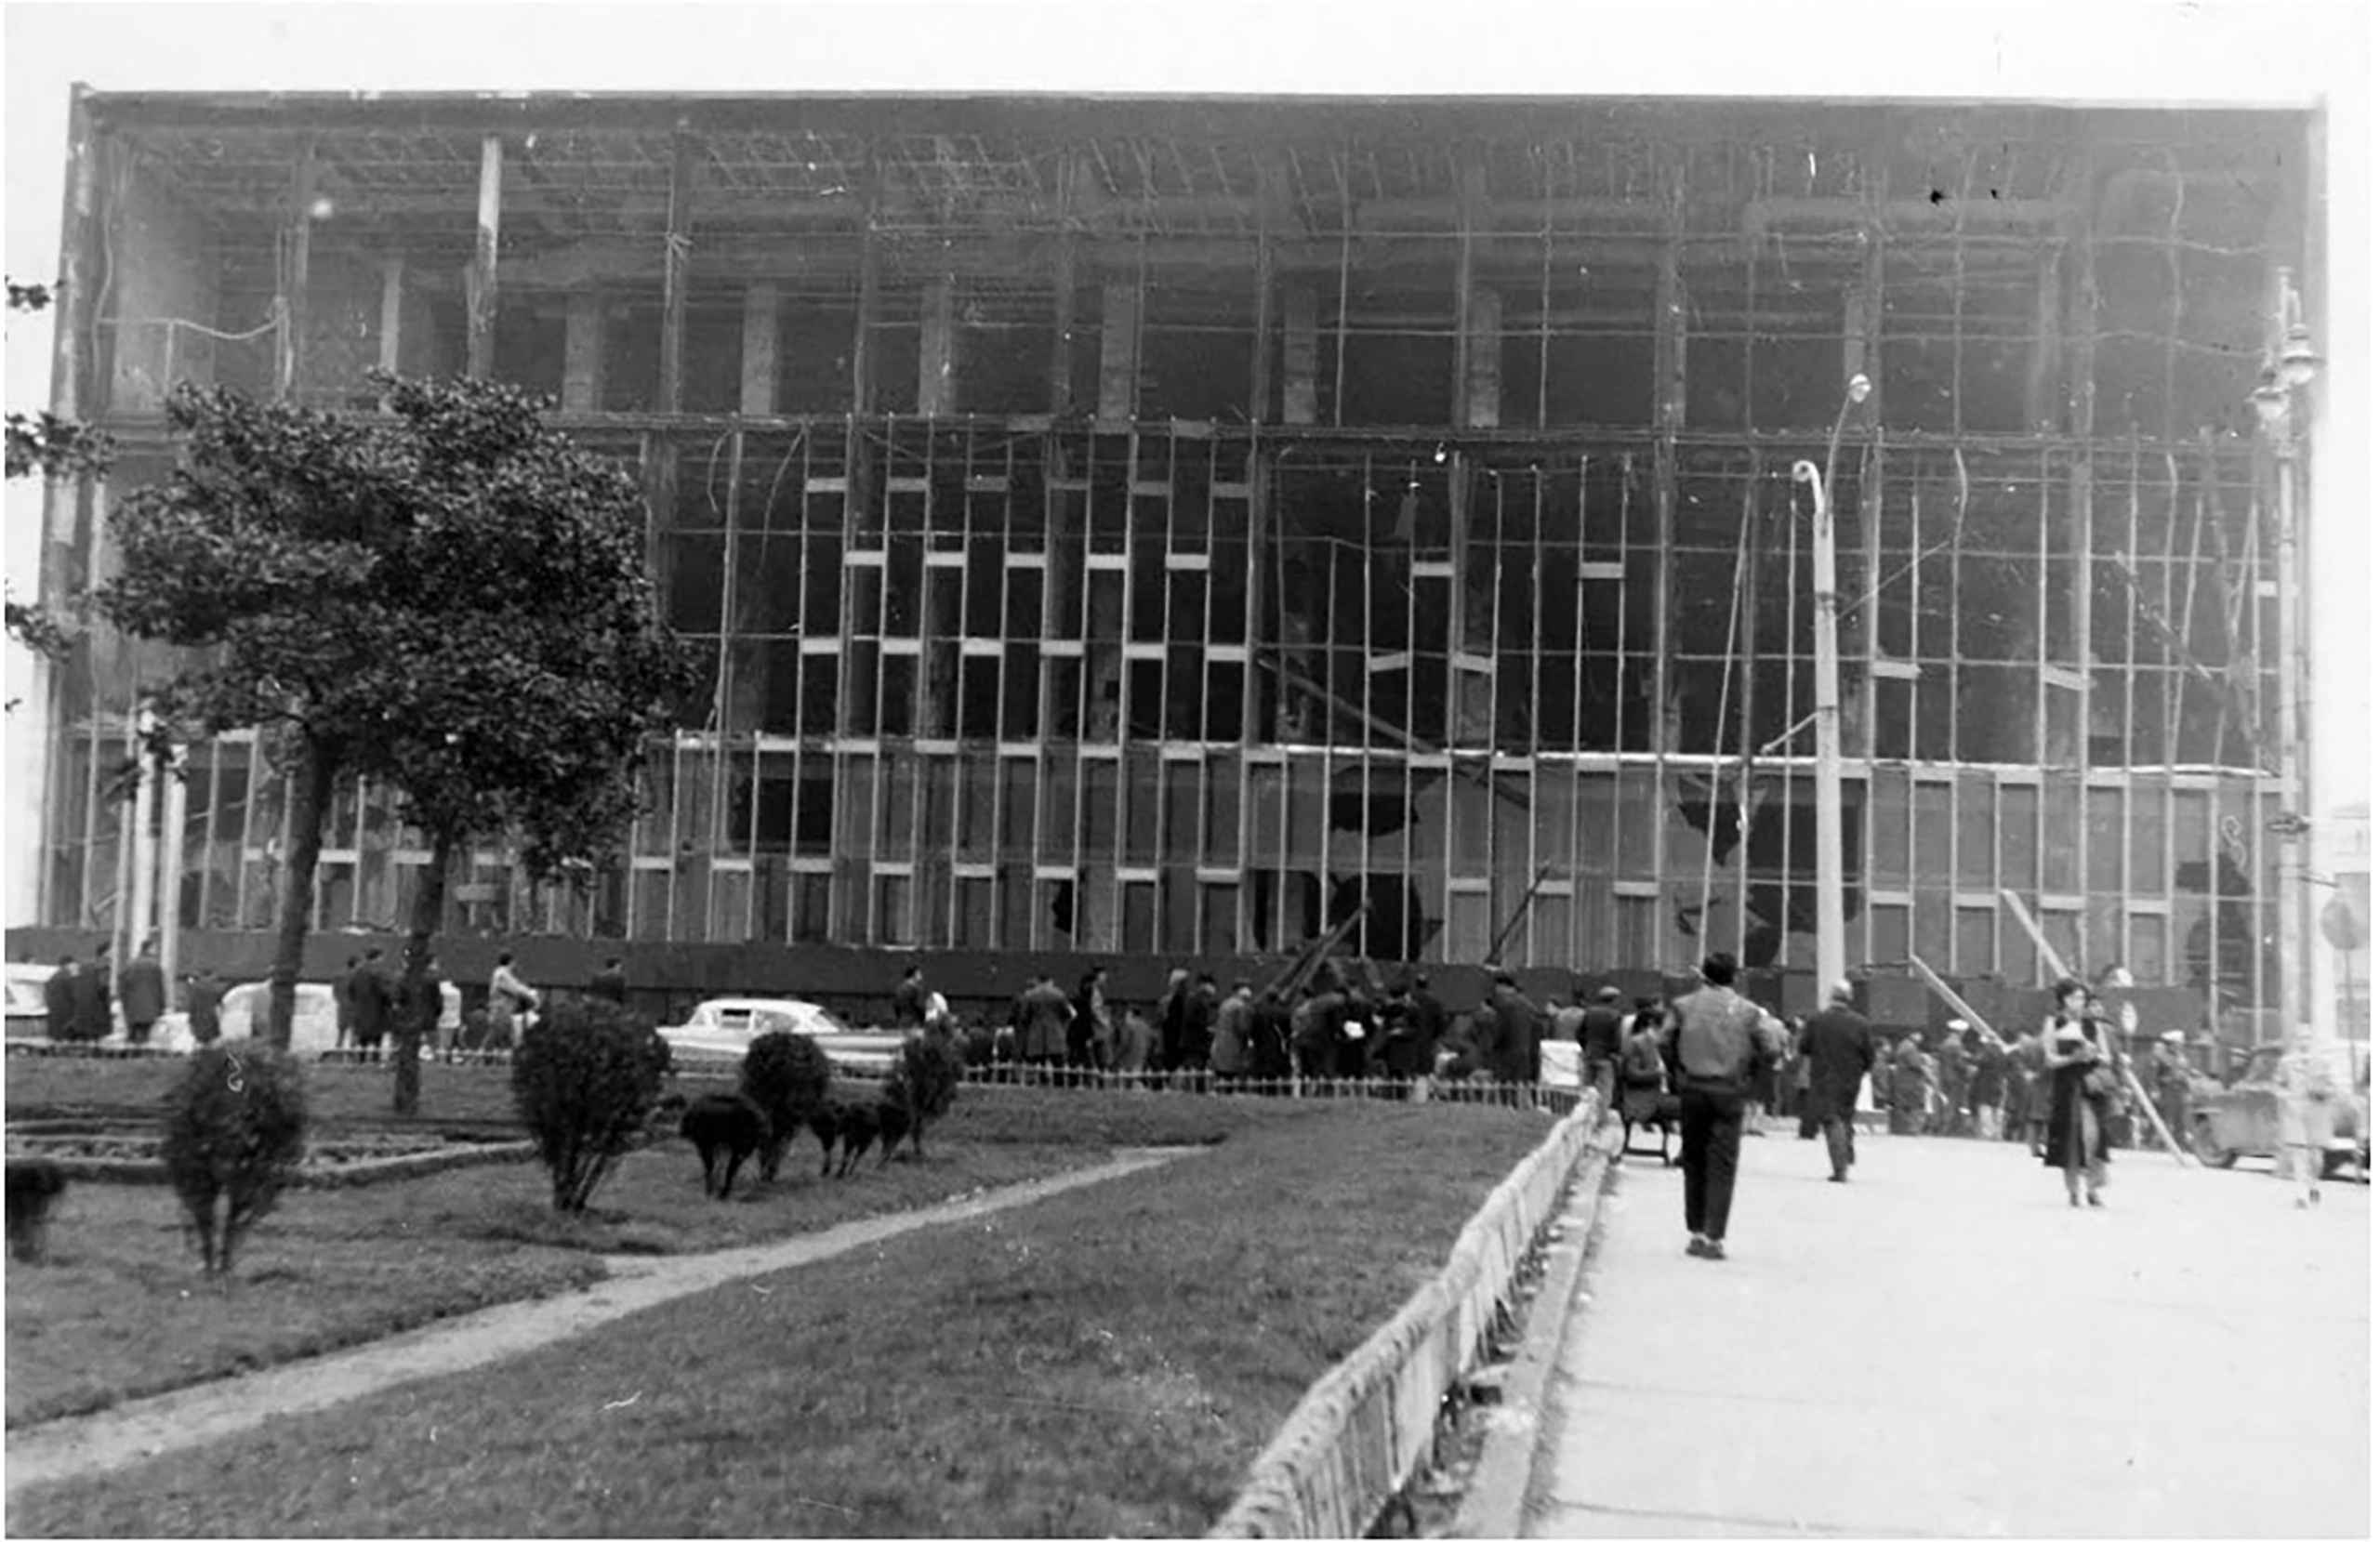 Resim 5. İstanbul Kültür Sarayı yangın sonrası, 28 Kasım 1970 (URL-4).Image 5. Istanbul Culture Palace after the fire, 28 November 1970 (URL-4).